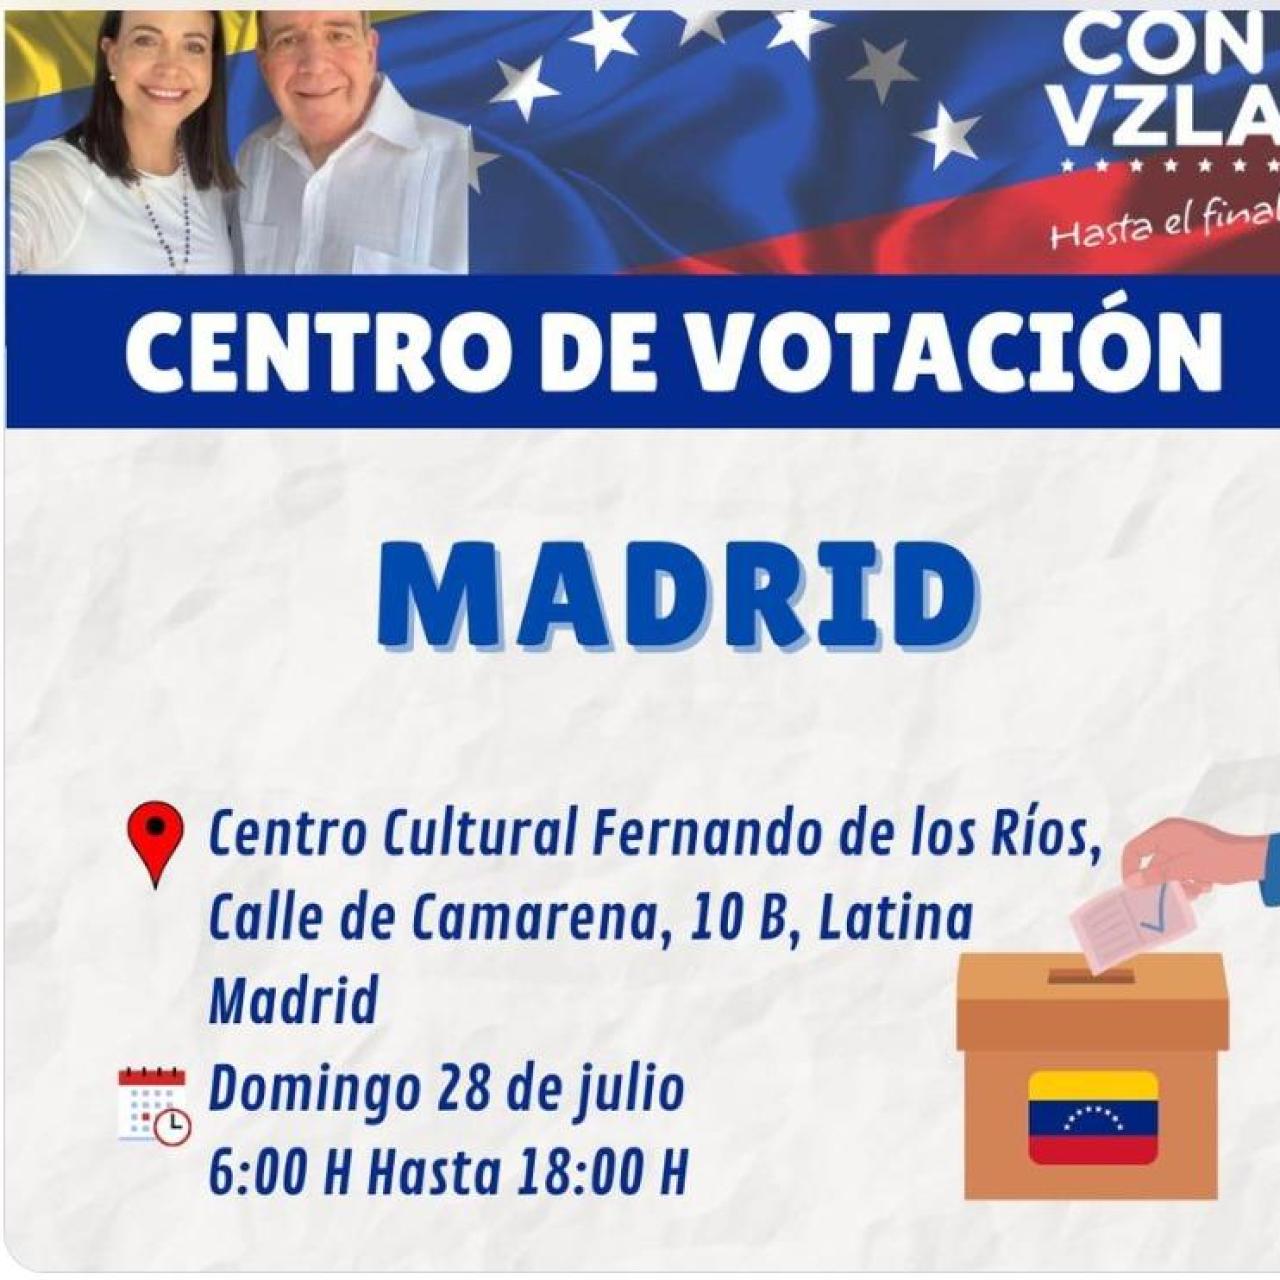 Cartel que anuncia los centros de votación en Madrid.